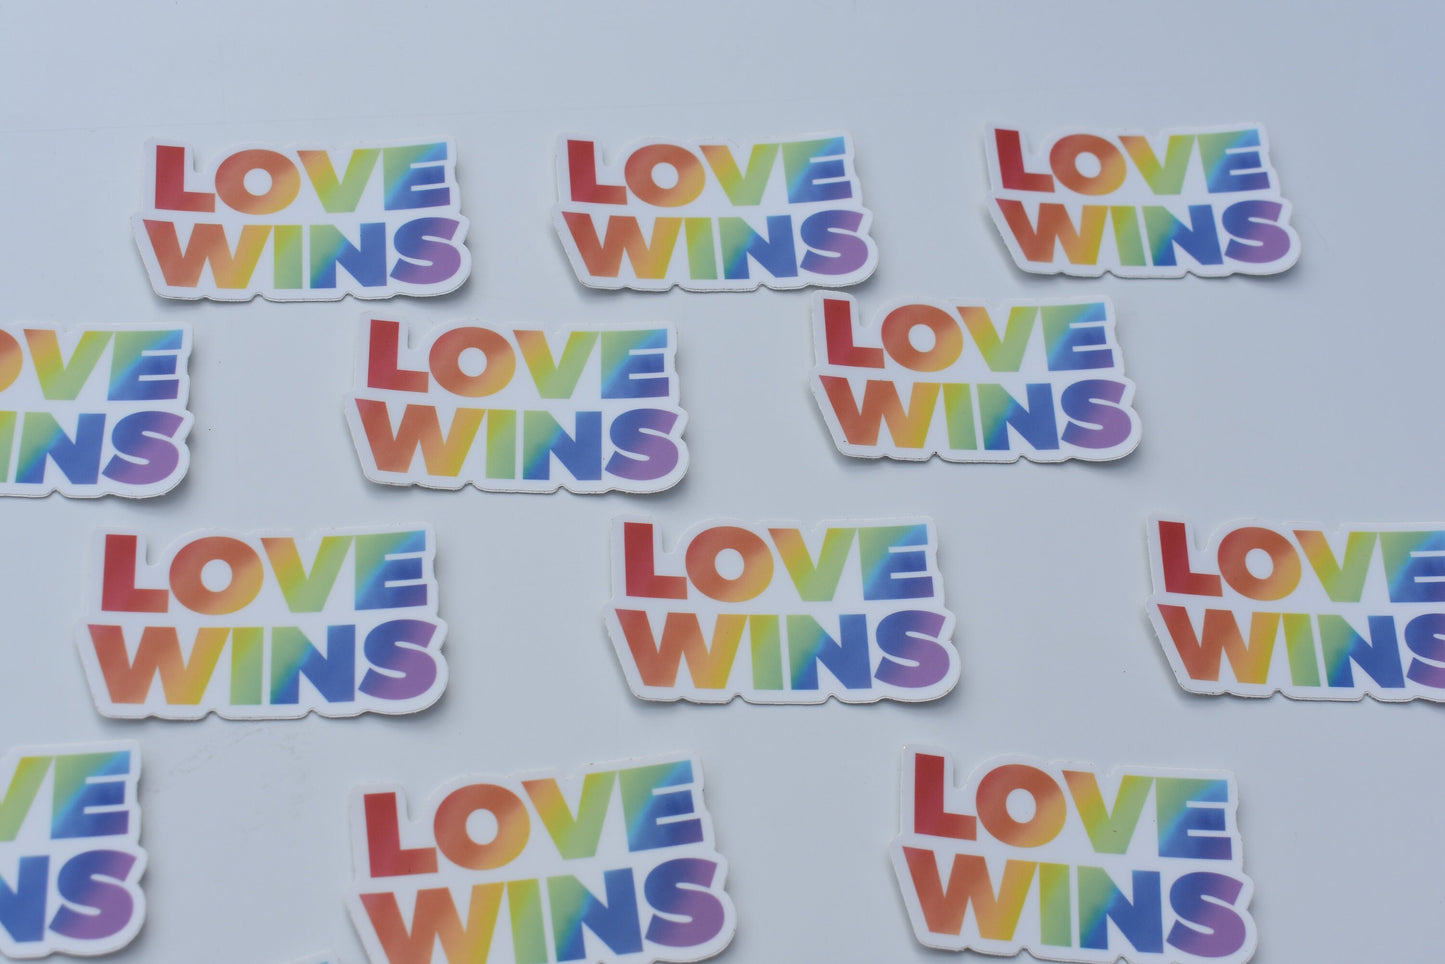 Love Wins Sticker, Vinyl Laptop Waterbottle Sticker, LGBTQ Pride Sticker, Rainbow Sticker, Gay Pride